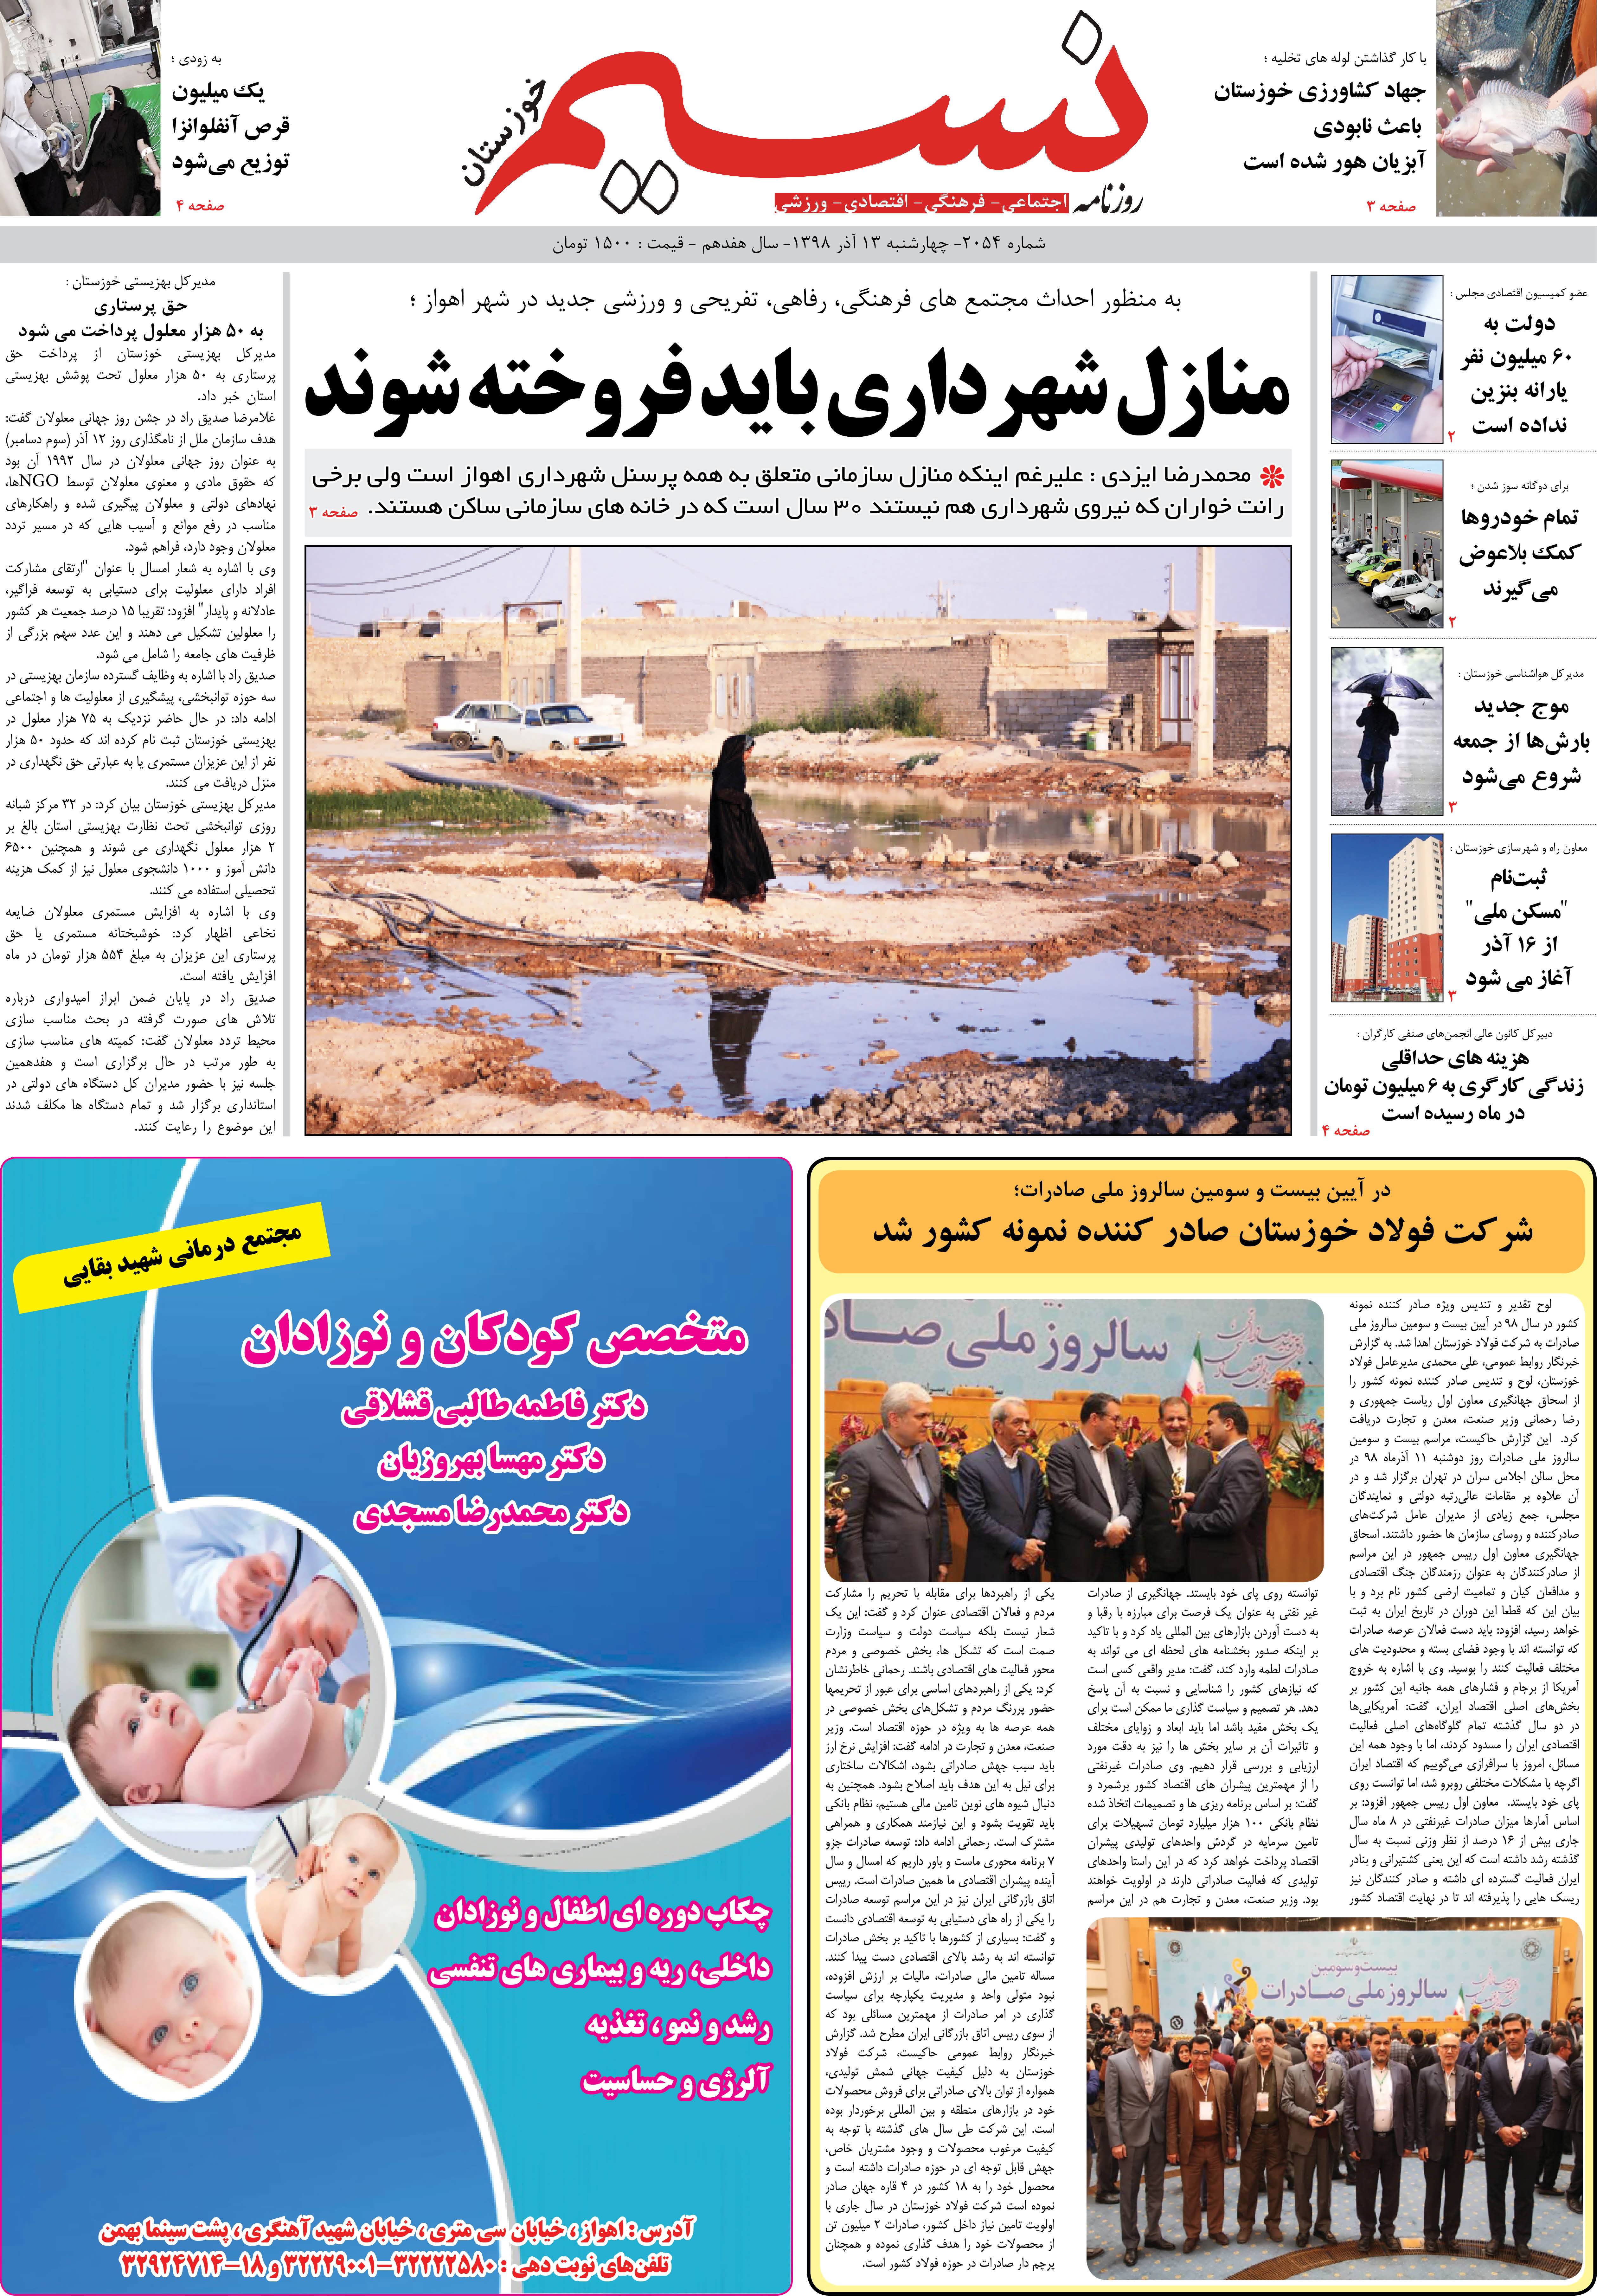 صفحه اصلی روزنامه نسیم شماره 2054 